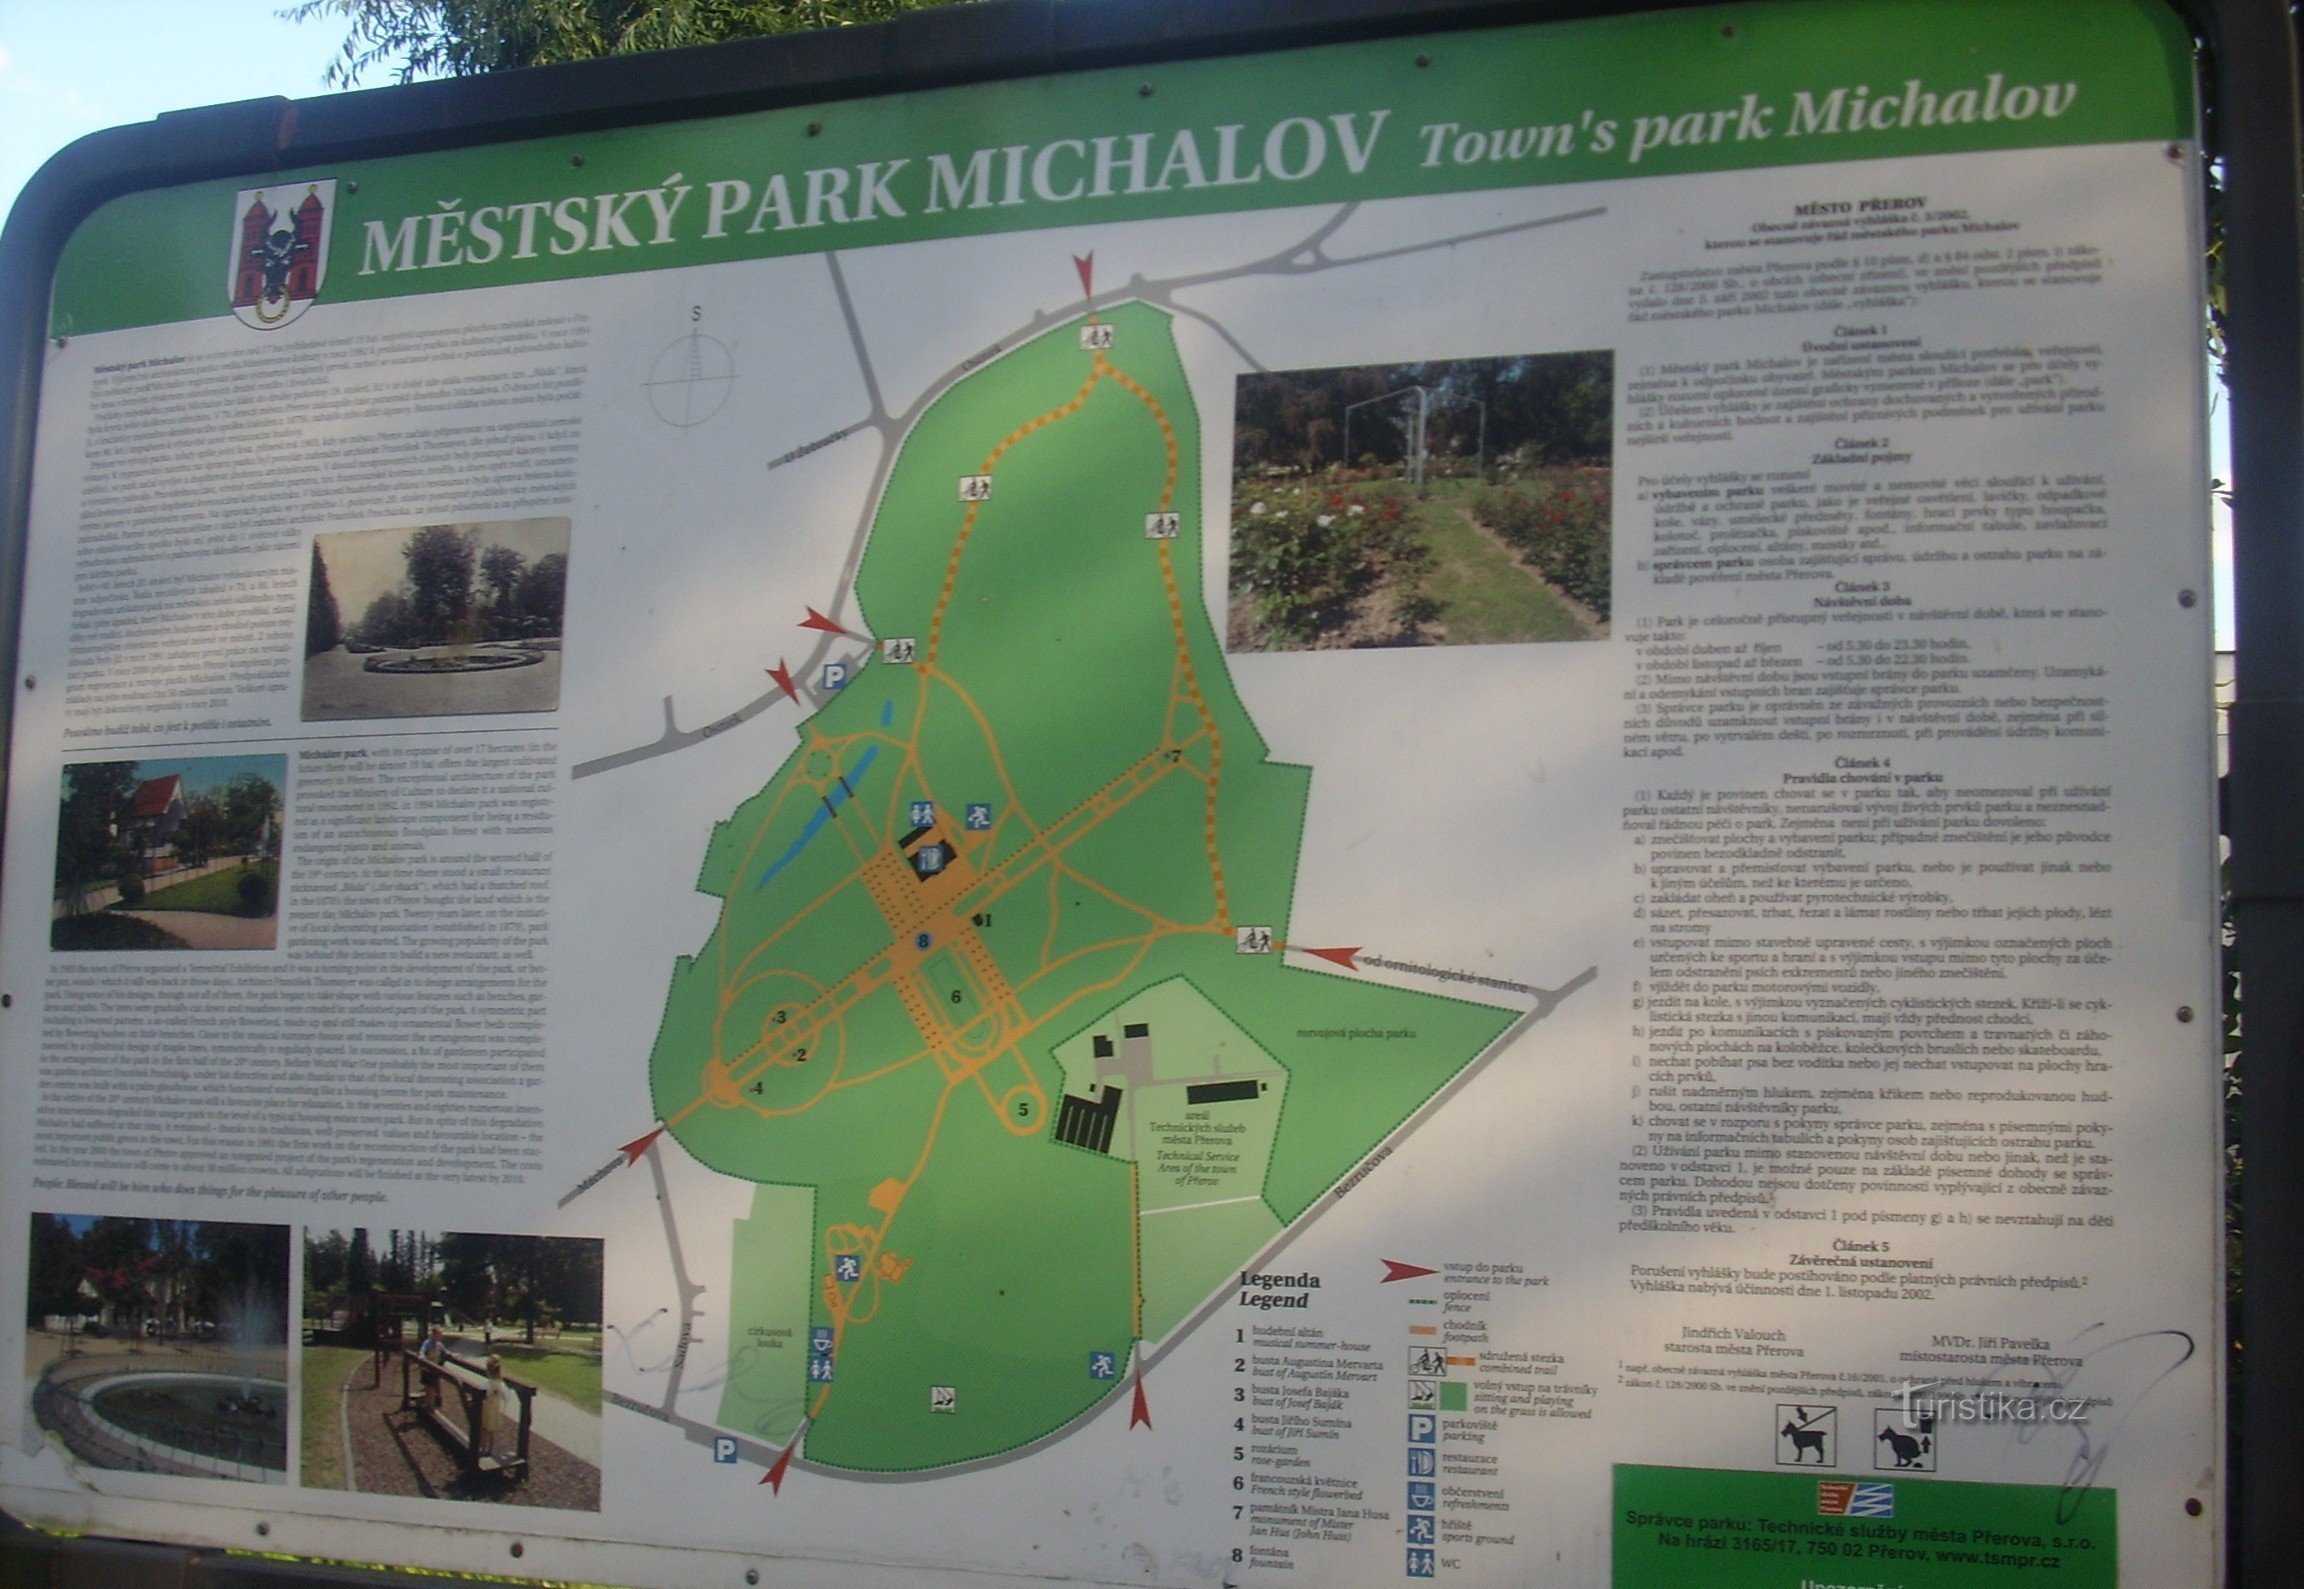 Michalov-stadspark in Přerov